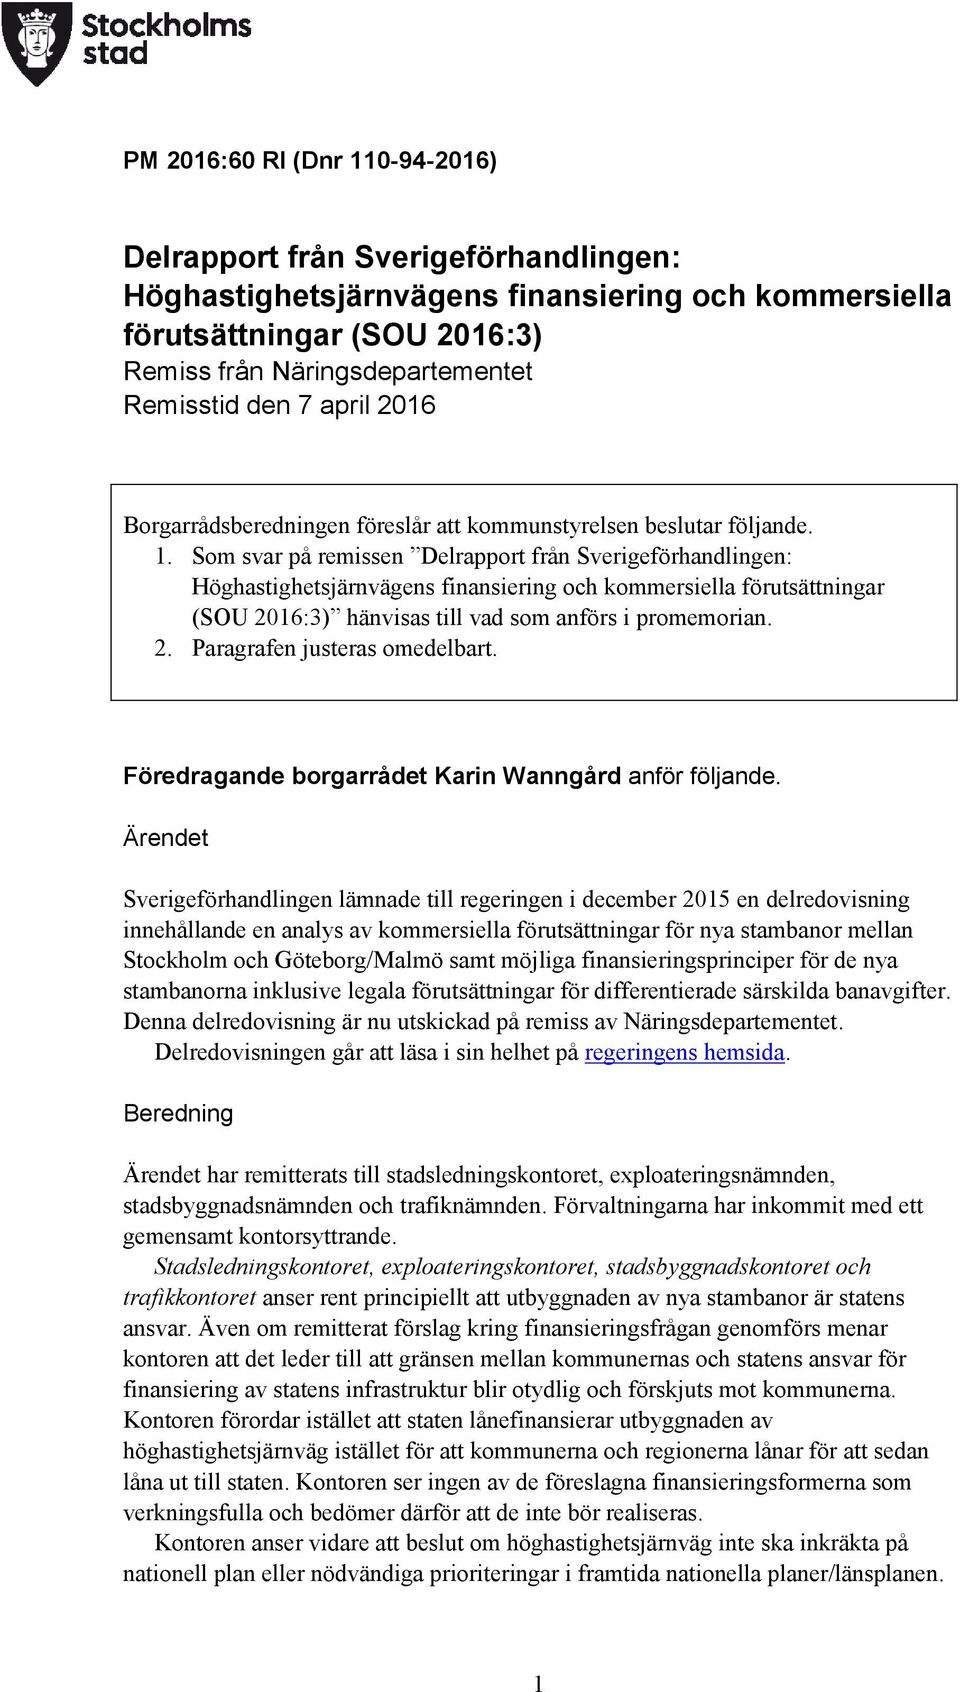 Som svar på remissen Delrapport från Sverigeförhandlingen: Höghastighetsjärnvägens finansiering och kommersiella förutsättningar (SOU 2016:3) hänvisas till vad som anförs i promemorian. 2. Paragrafen justeras omedelbart.